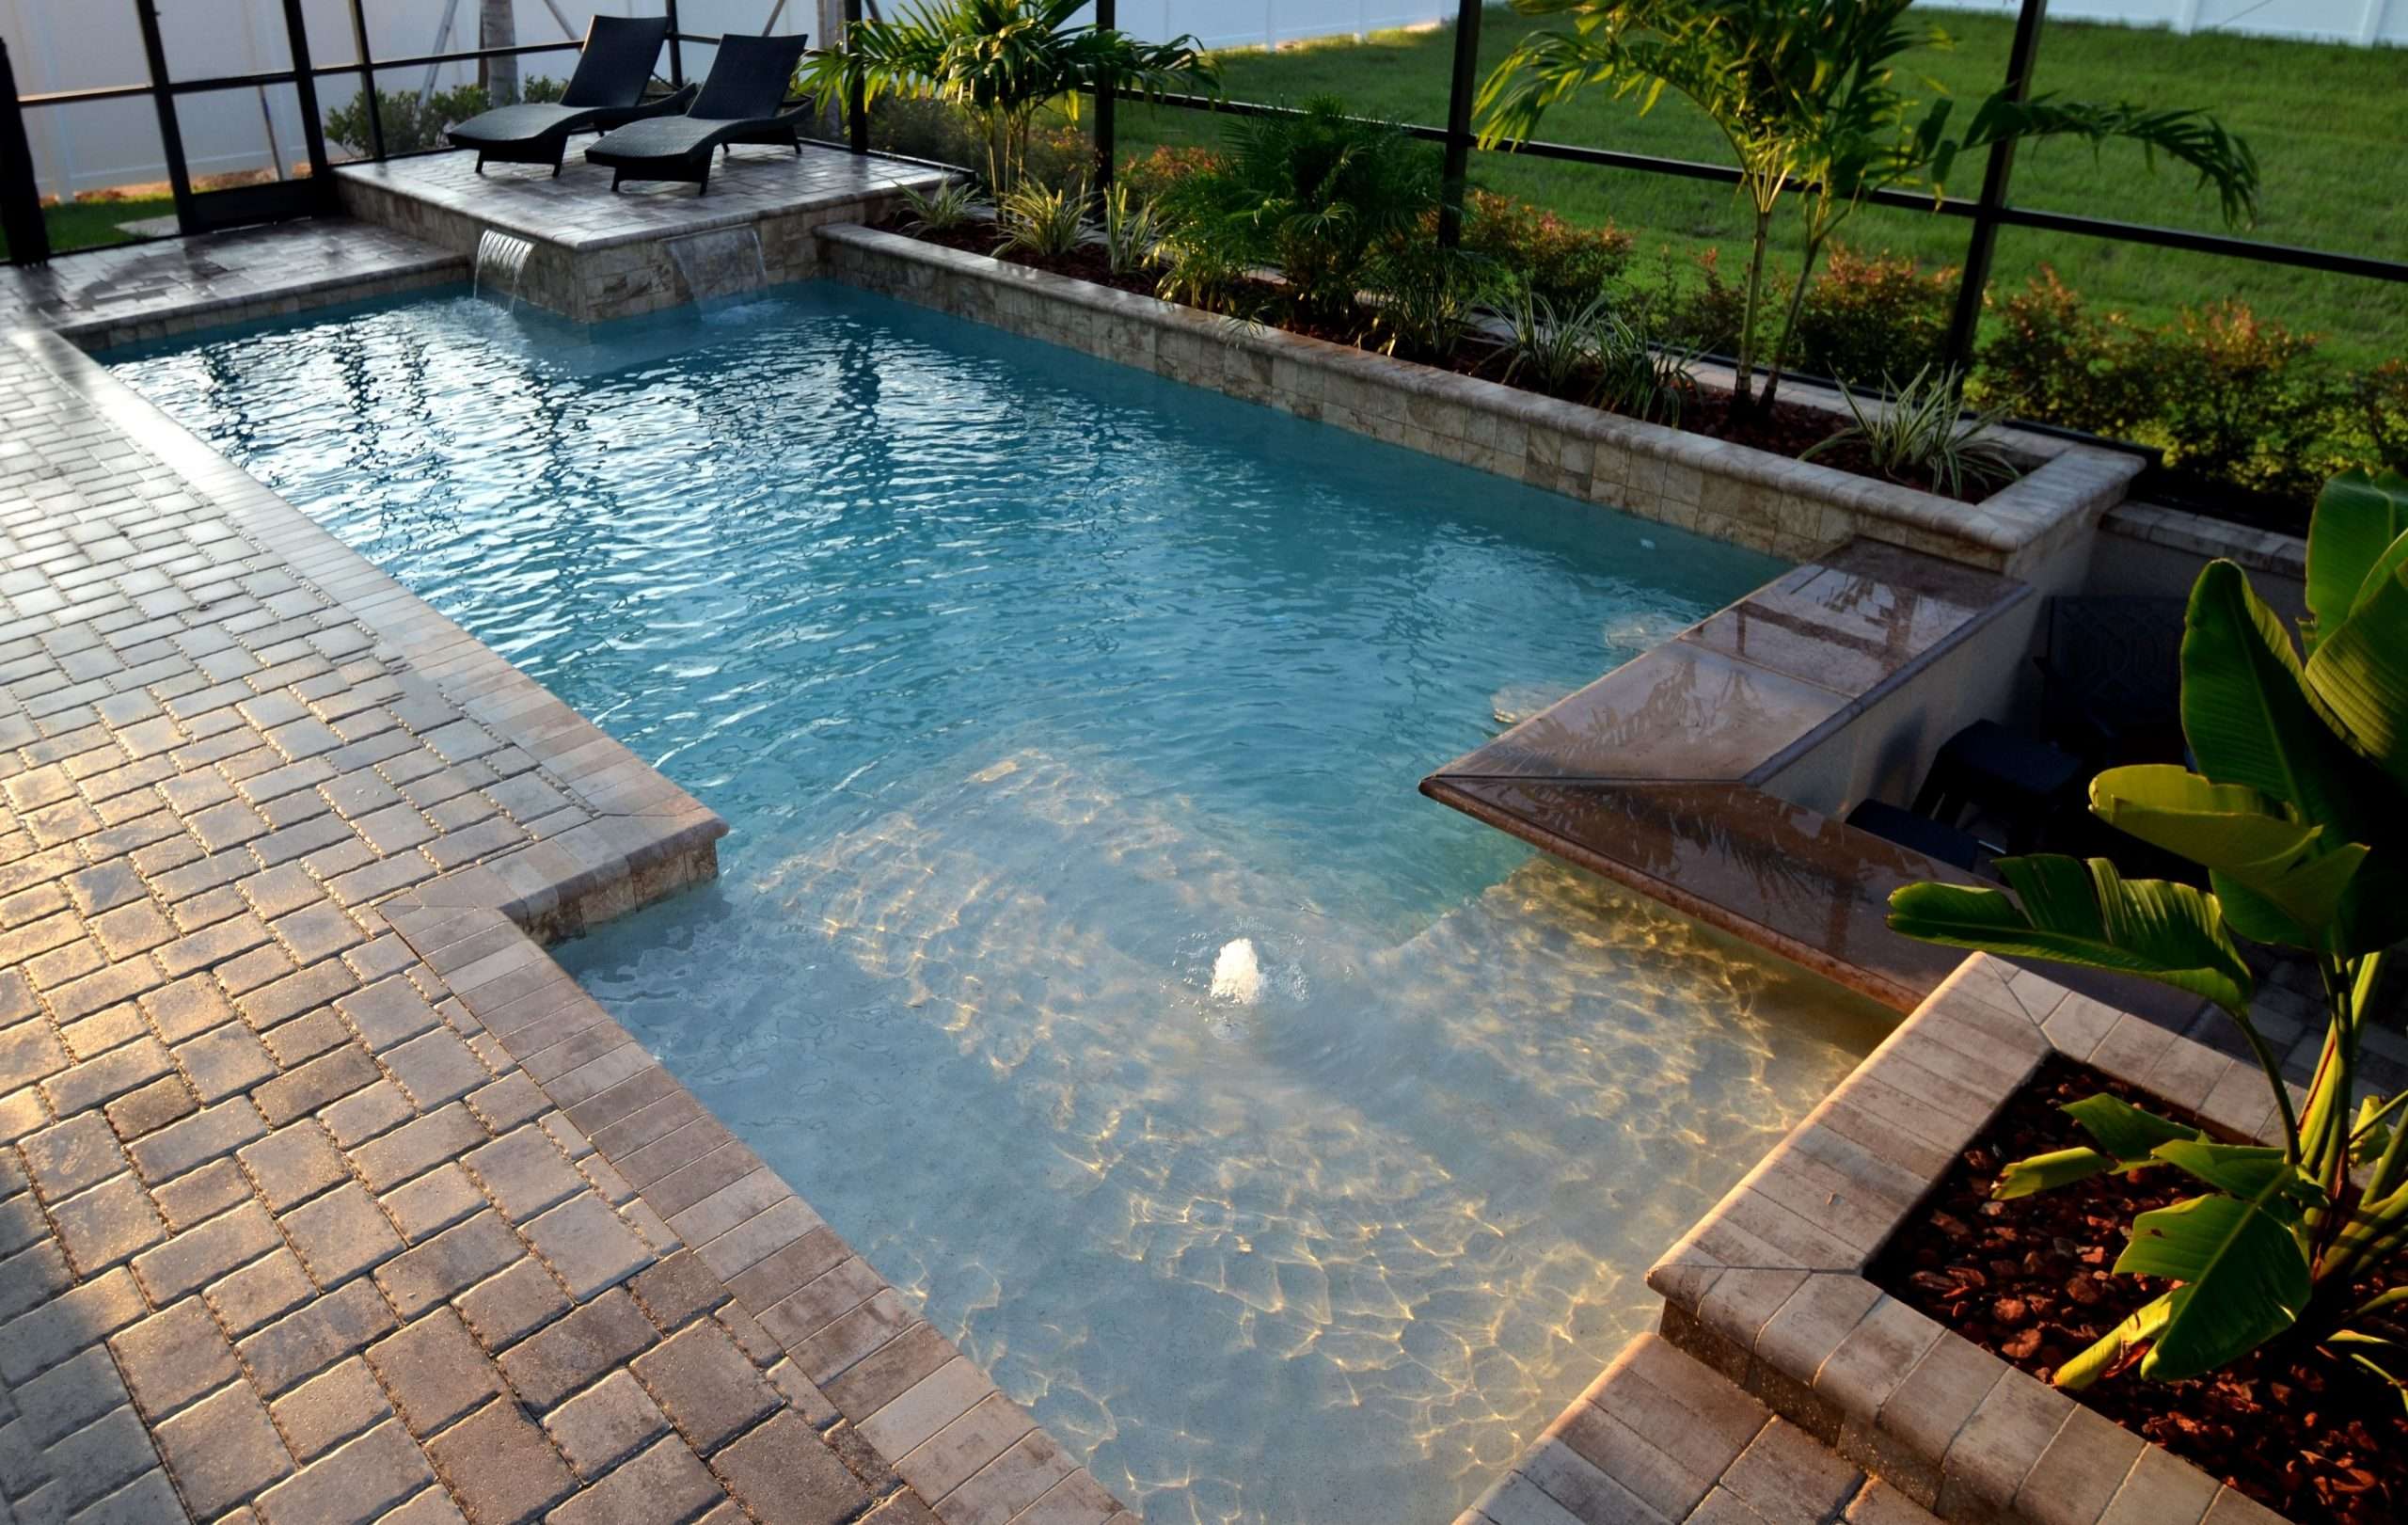 Use Good Pool Designs to enhance your Backyard